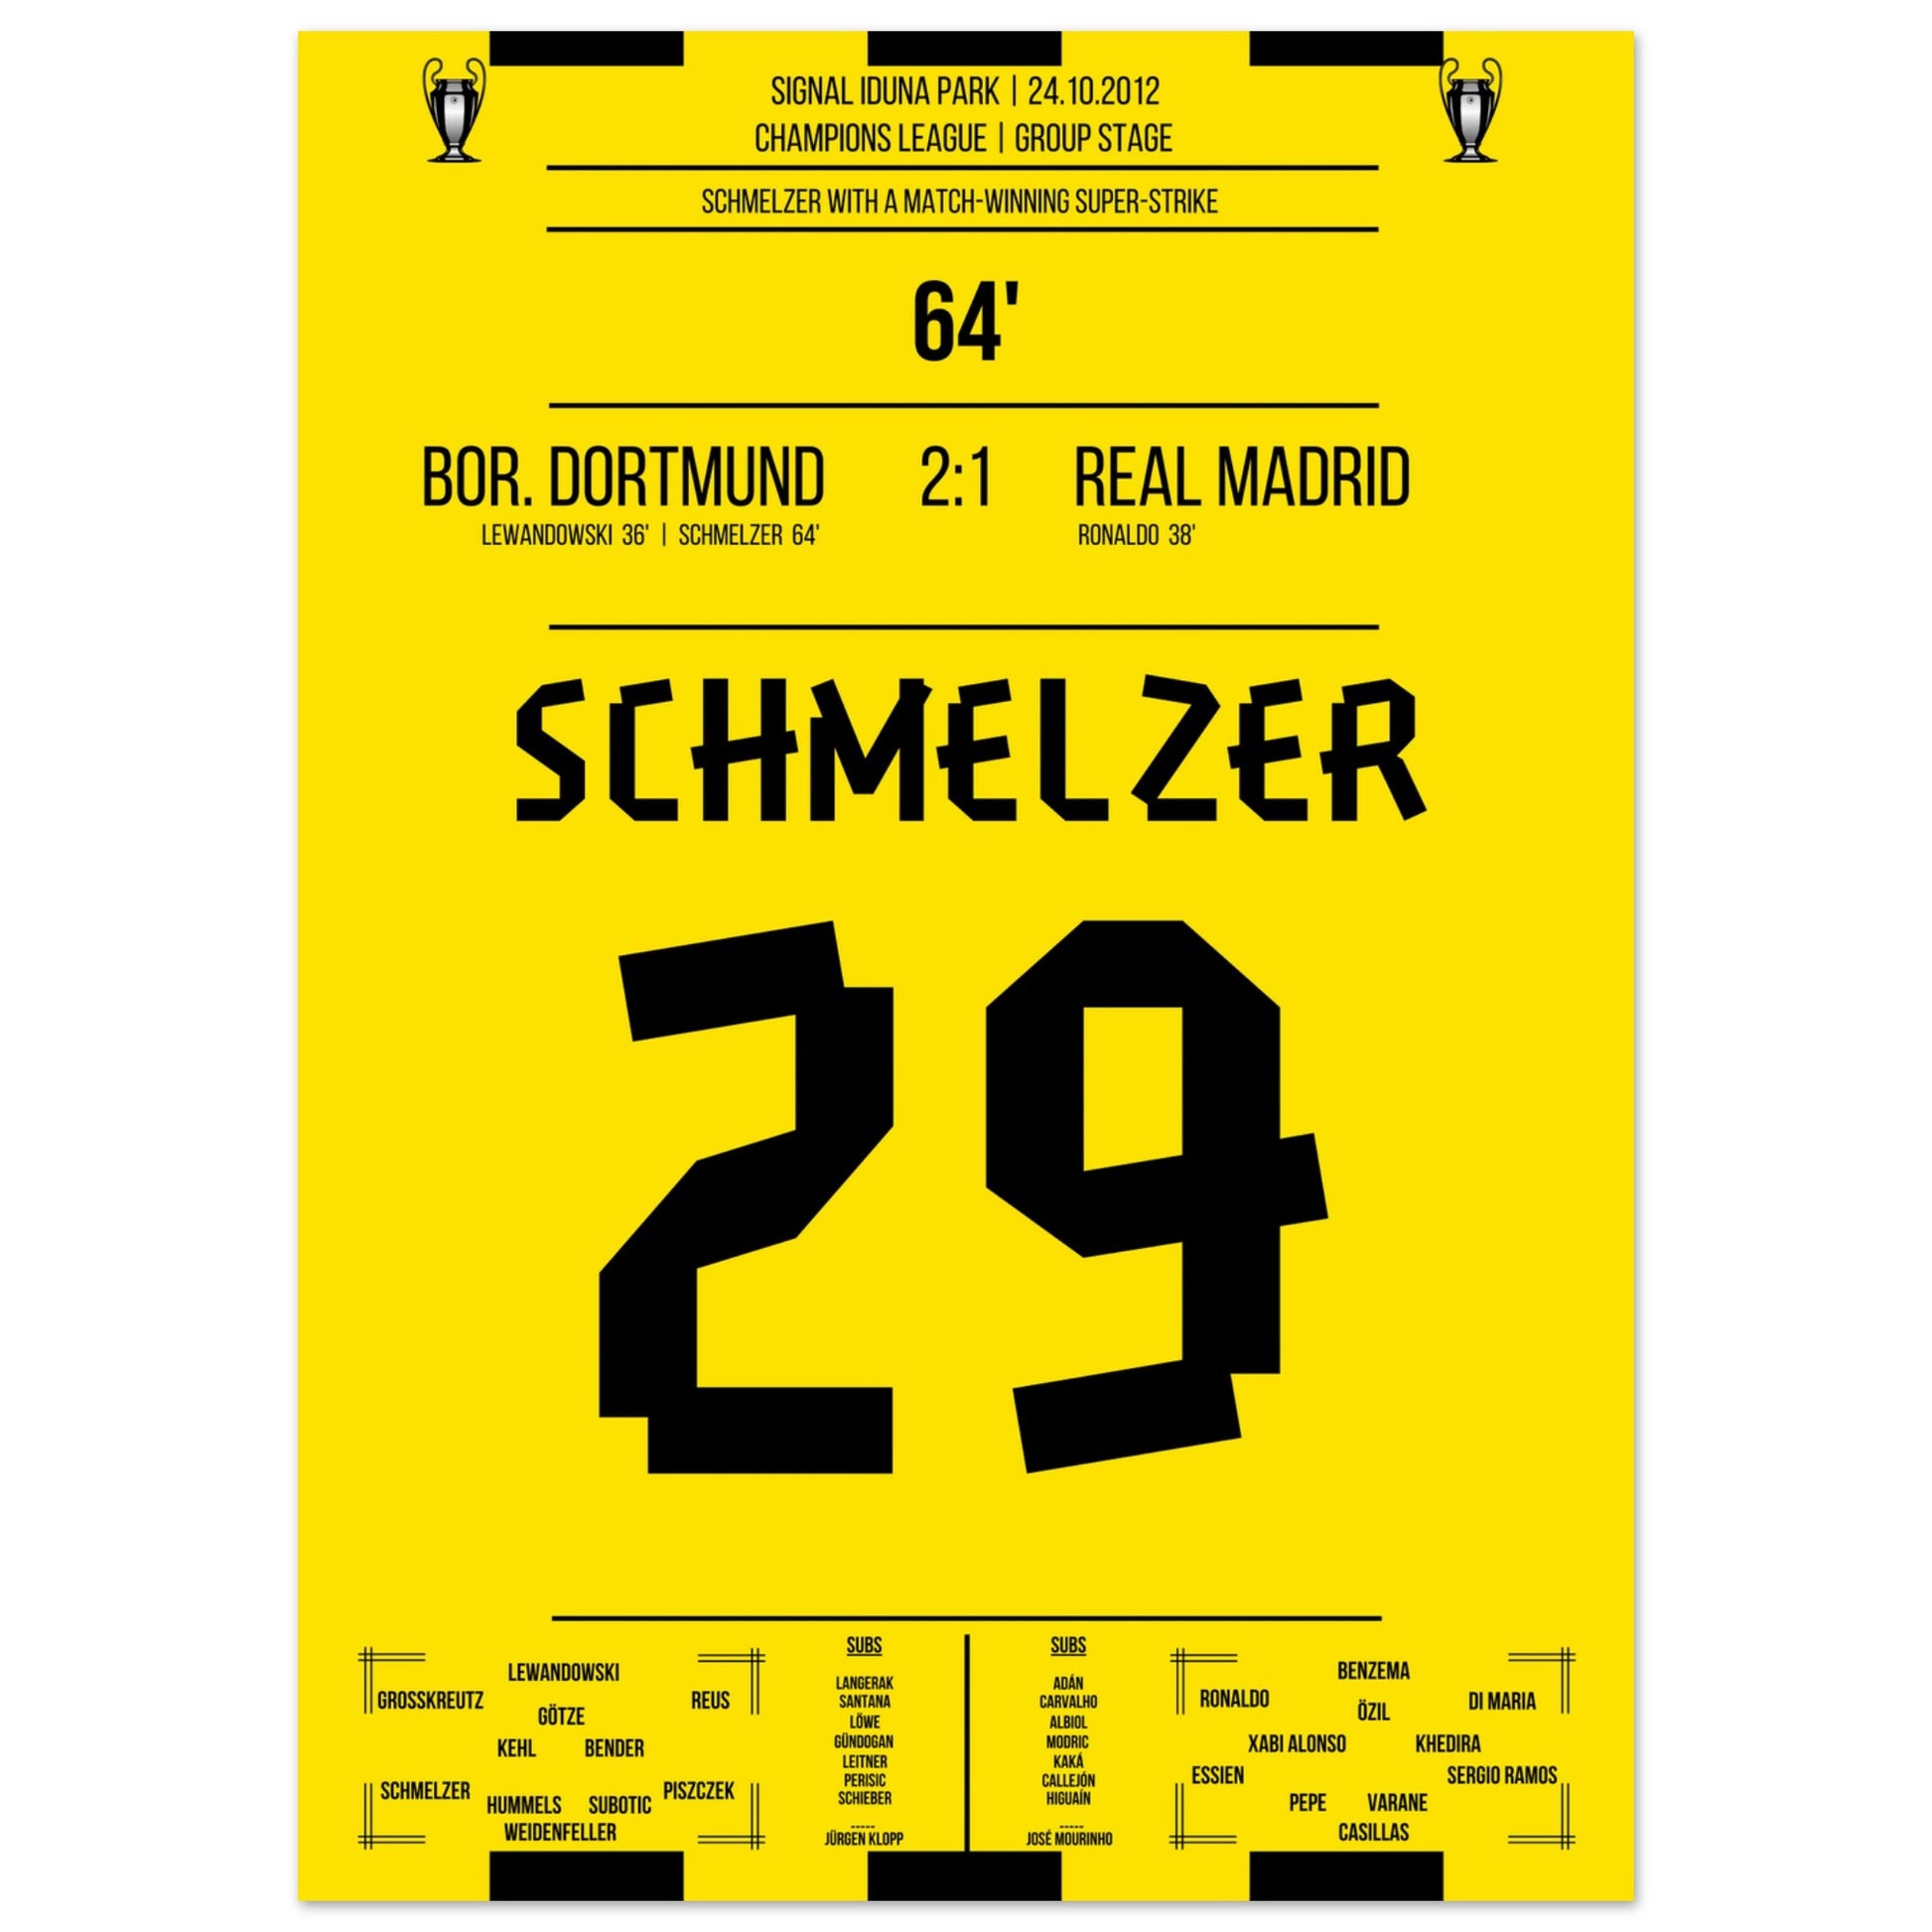 Schmelzer's linke Klebe gegen Real in der Champions League 2012 50x70-cm-20x28-Ohne-Rahmen